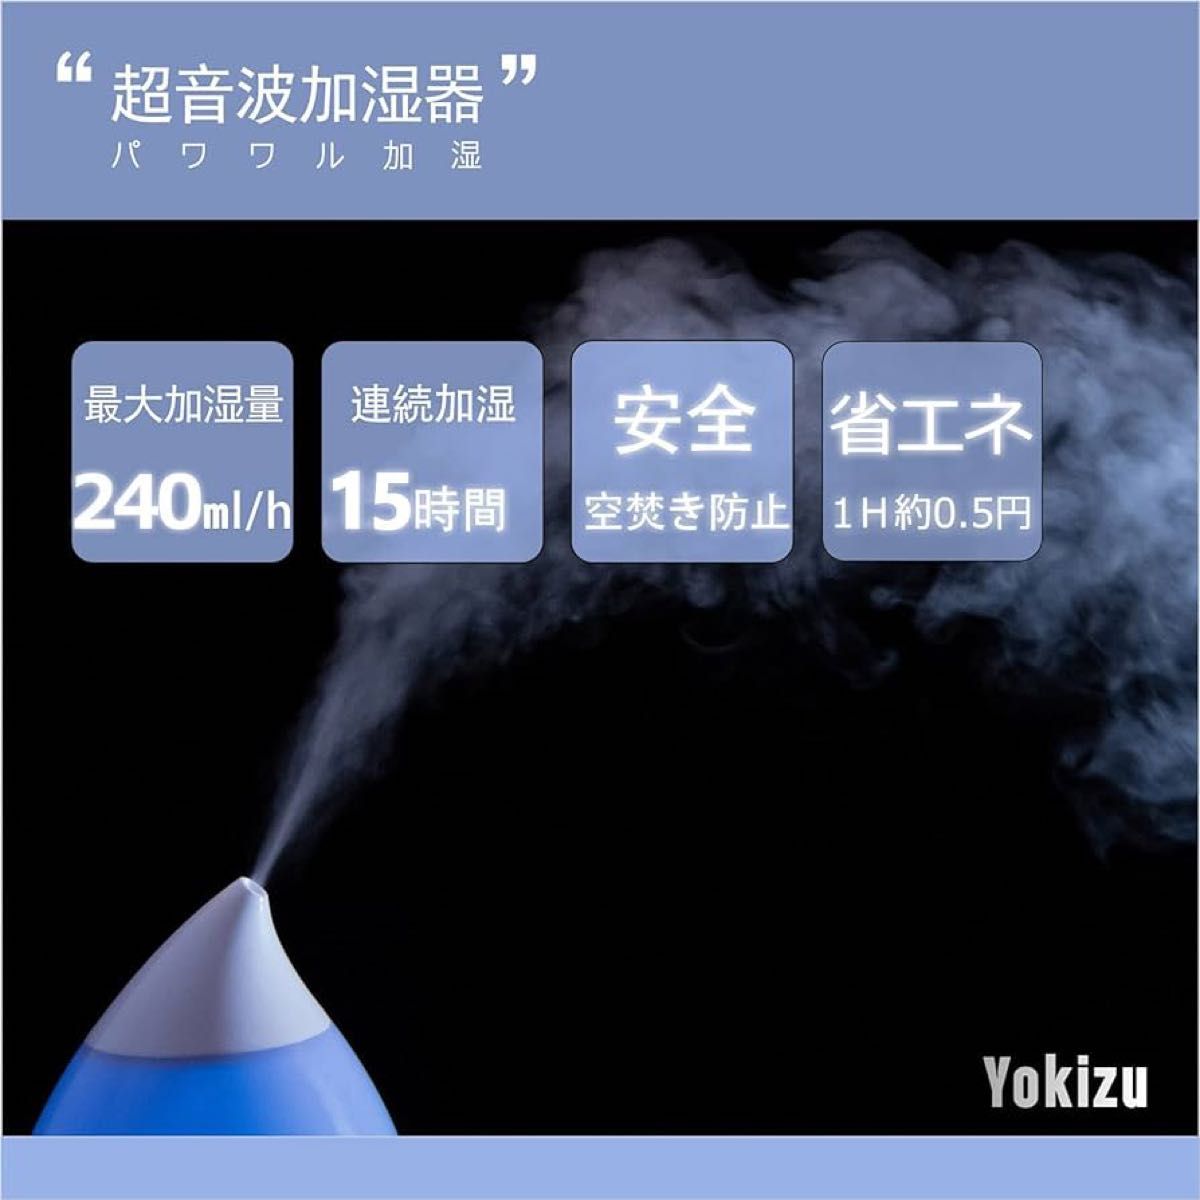 【箱なし美品】Yokizu 加湿器 卓上 アロマ 大容量 超音波式 しずく型 LED